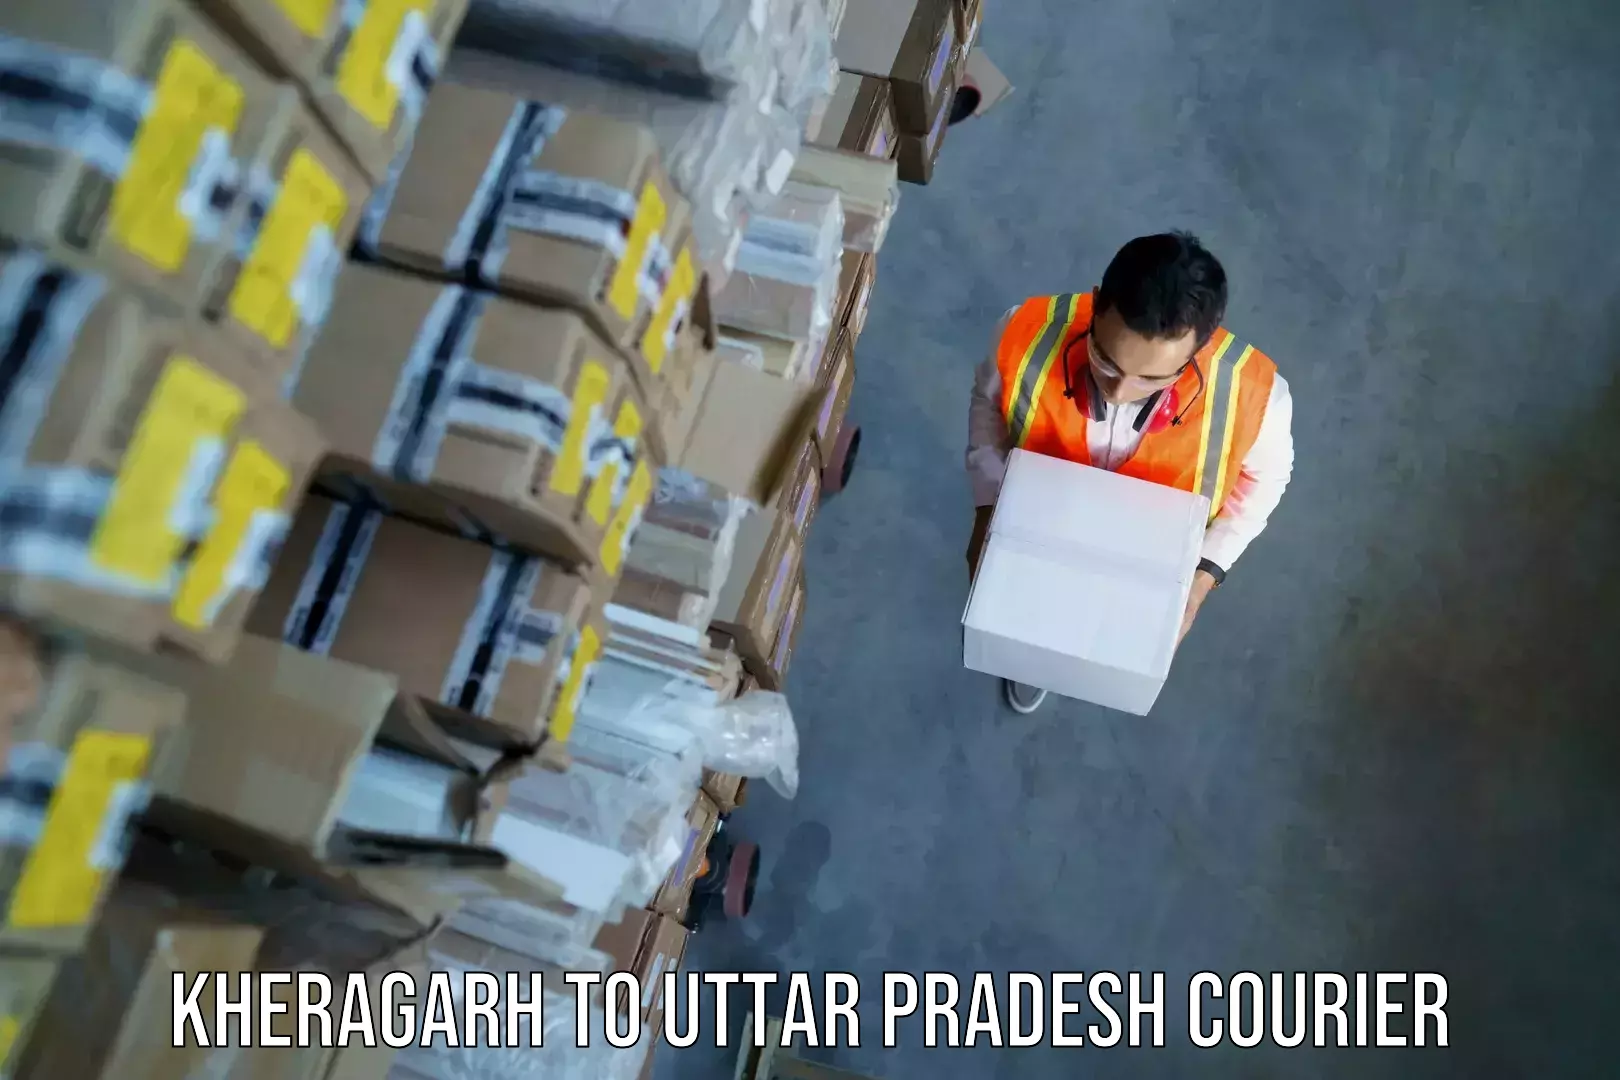 Urgent luggage shipment in Kheragarh to Chandauli